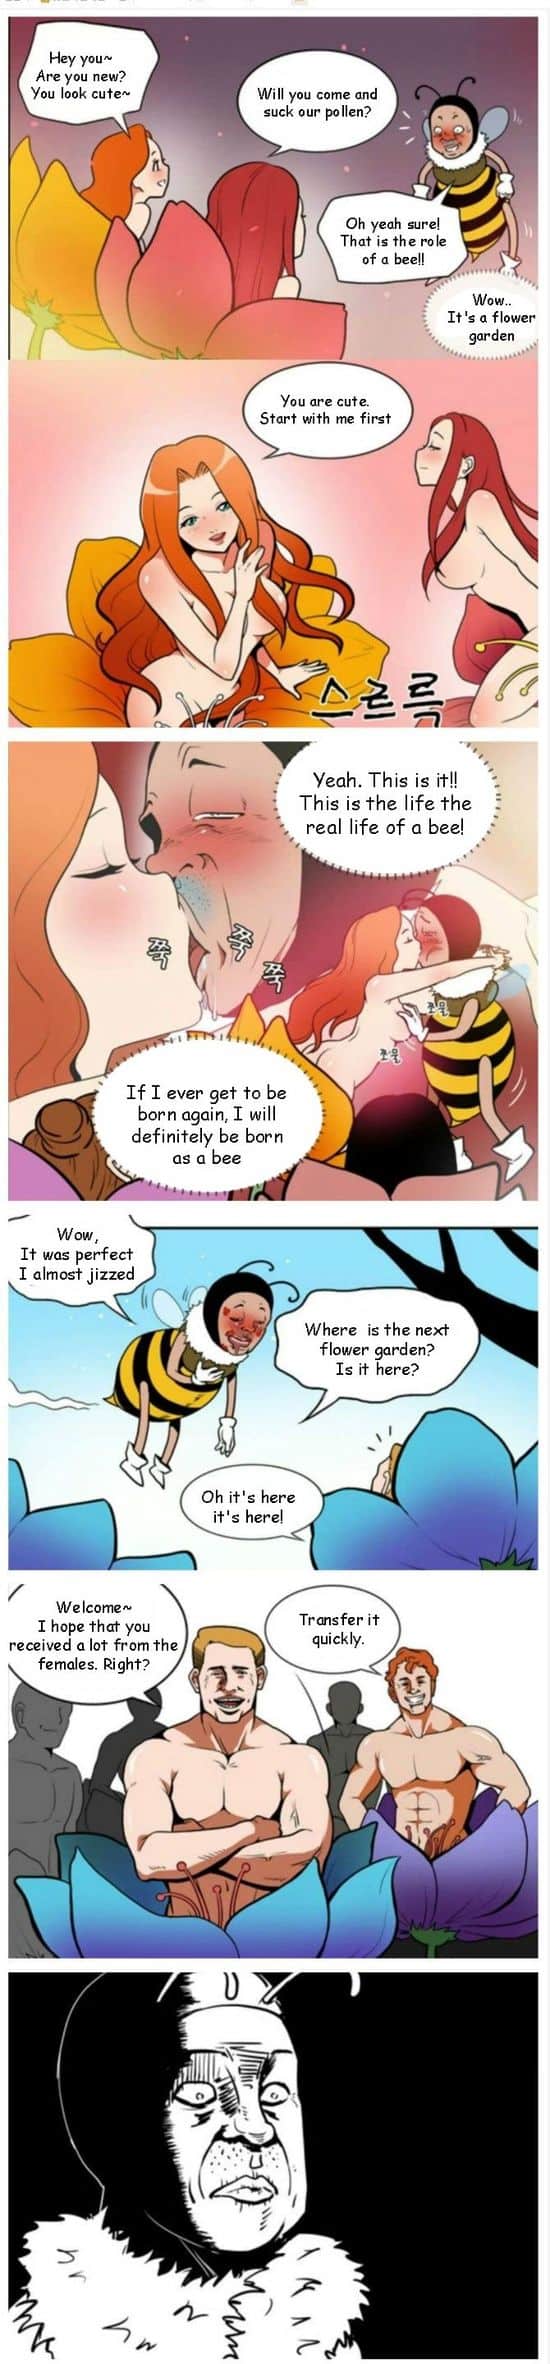 Από τη ζωή μιας μέλισσας